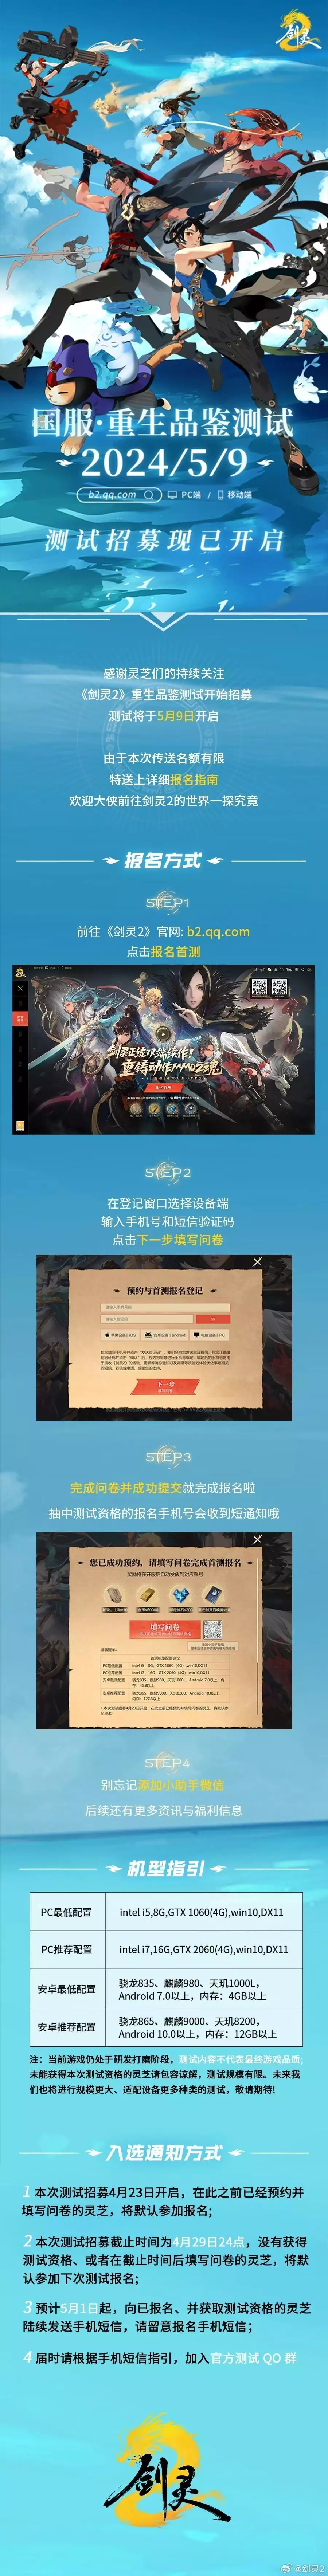 腾讯游戏《剑灵2》新视频国服首测招募开启大